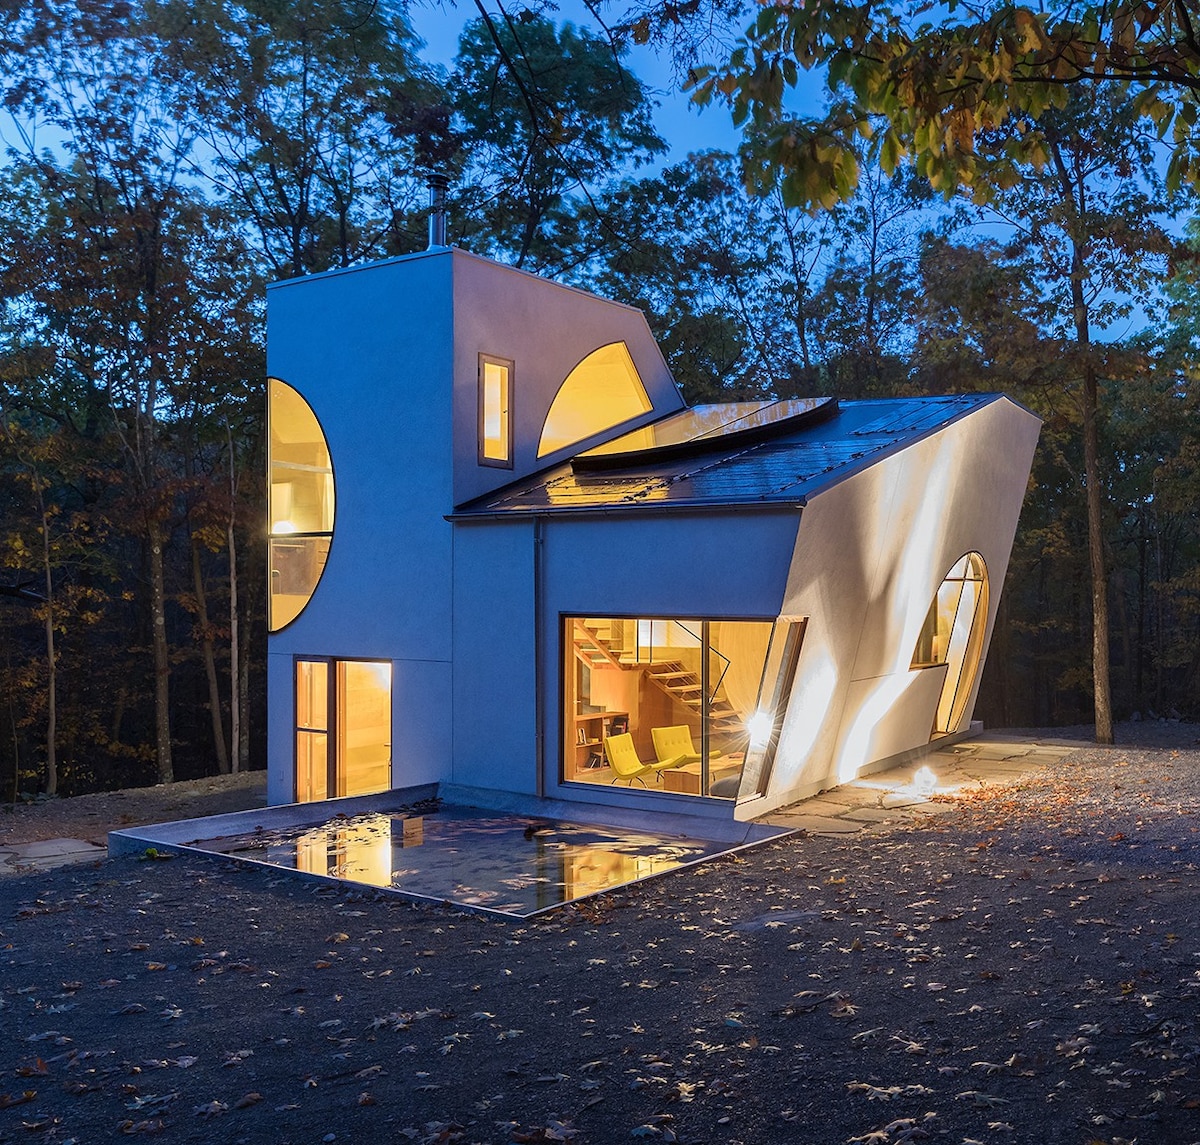 Uma casa branca e moderna projetada por Steven Holl ao anoitecer e iluminada calorosamente por dentro.